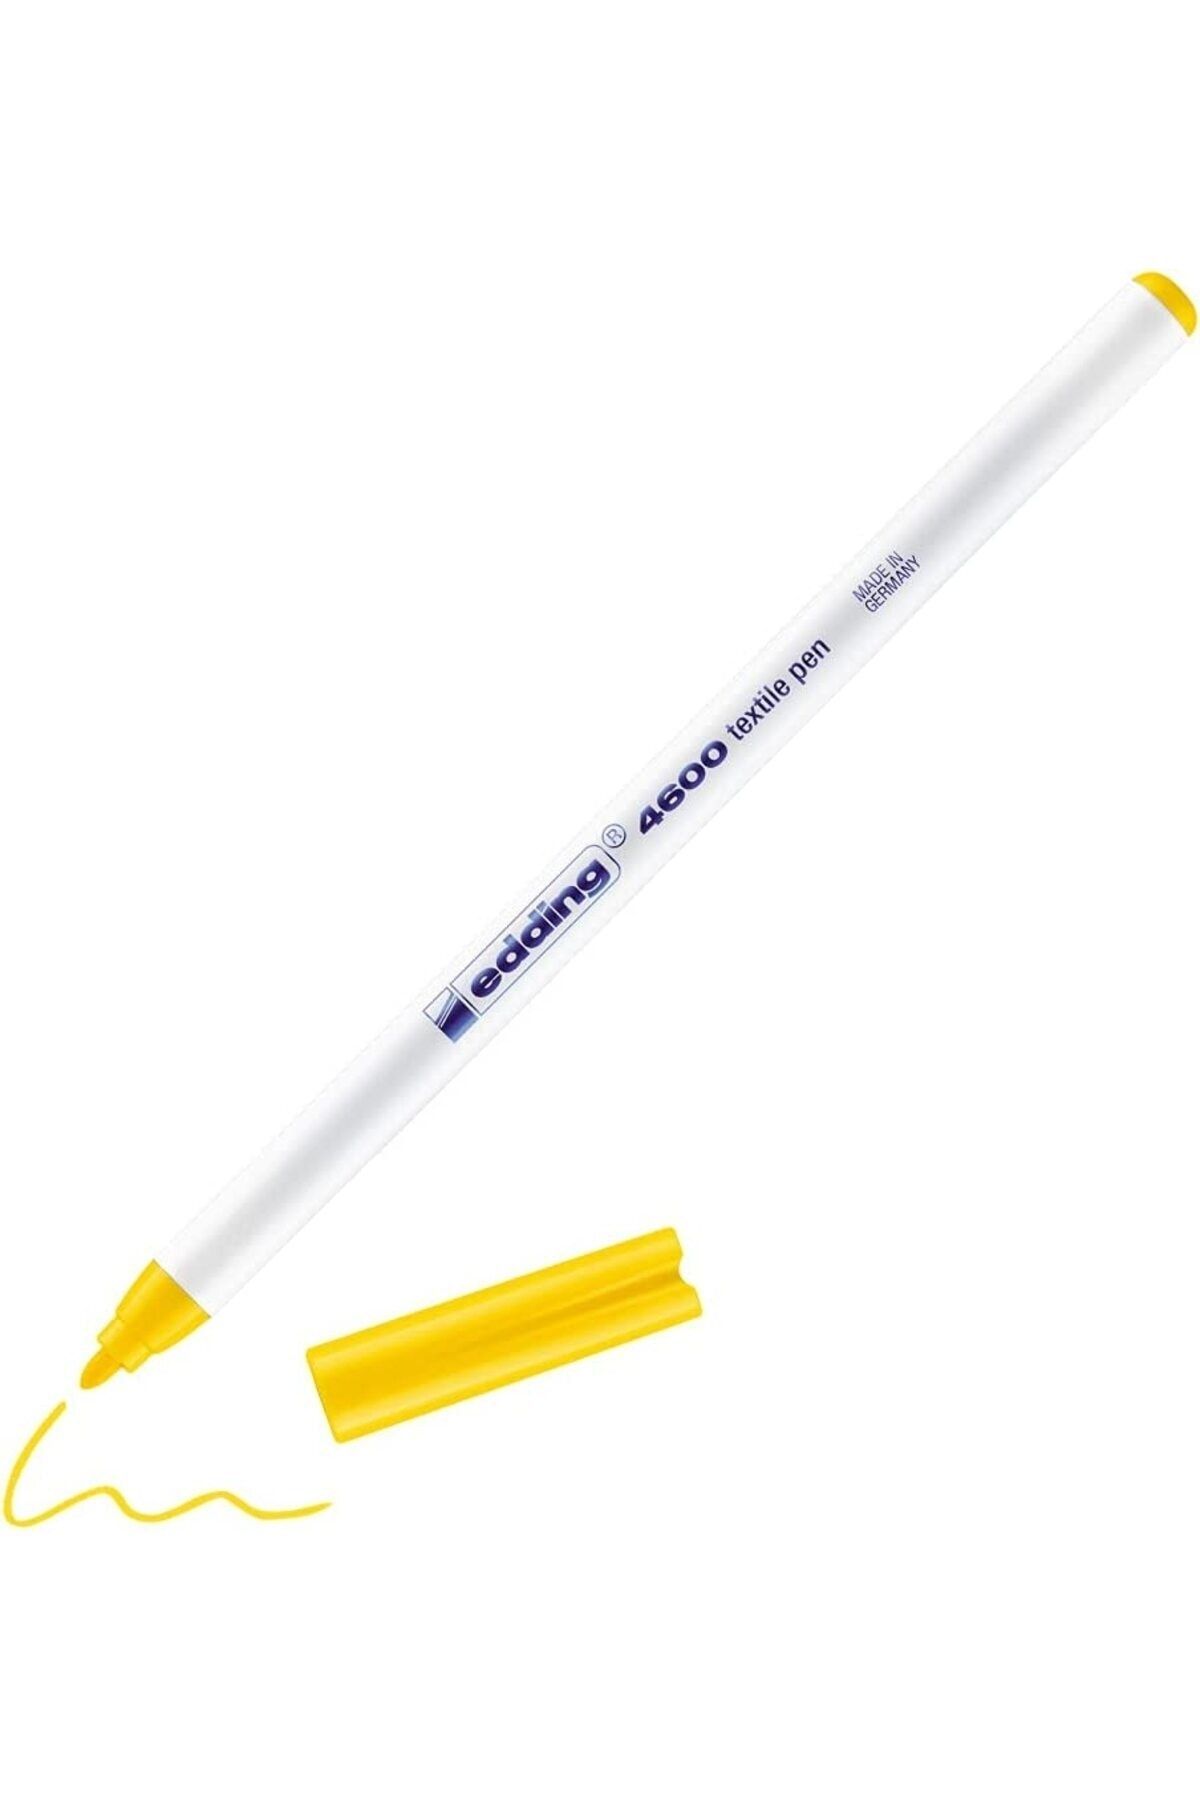 Edding Tekstil Kalemi 1mm Sarı